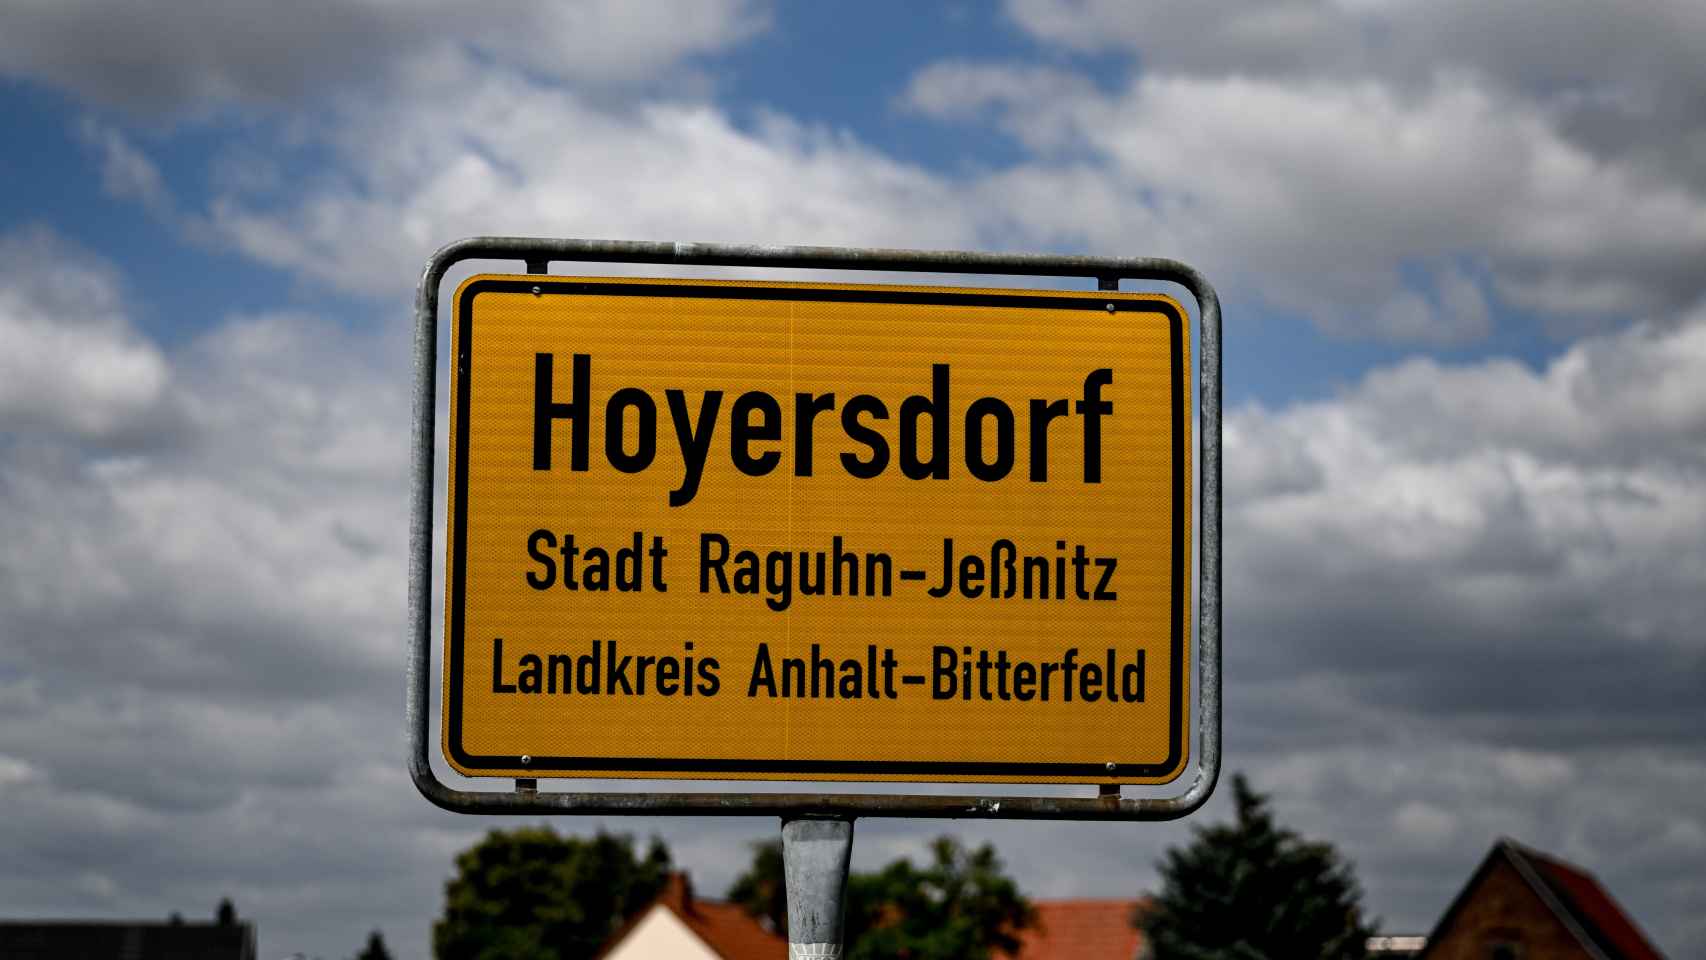 La señal en la entrada de Hoyersdorf en Raguhn-Jeßnitz, un municipio de la región alemana de Sajonia-Anhalt.